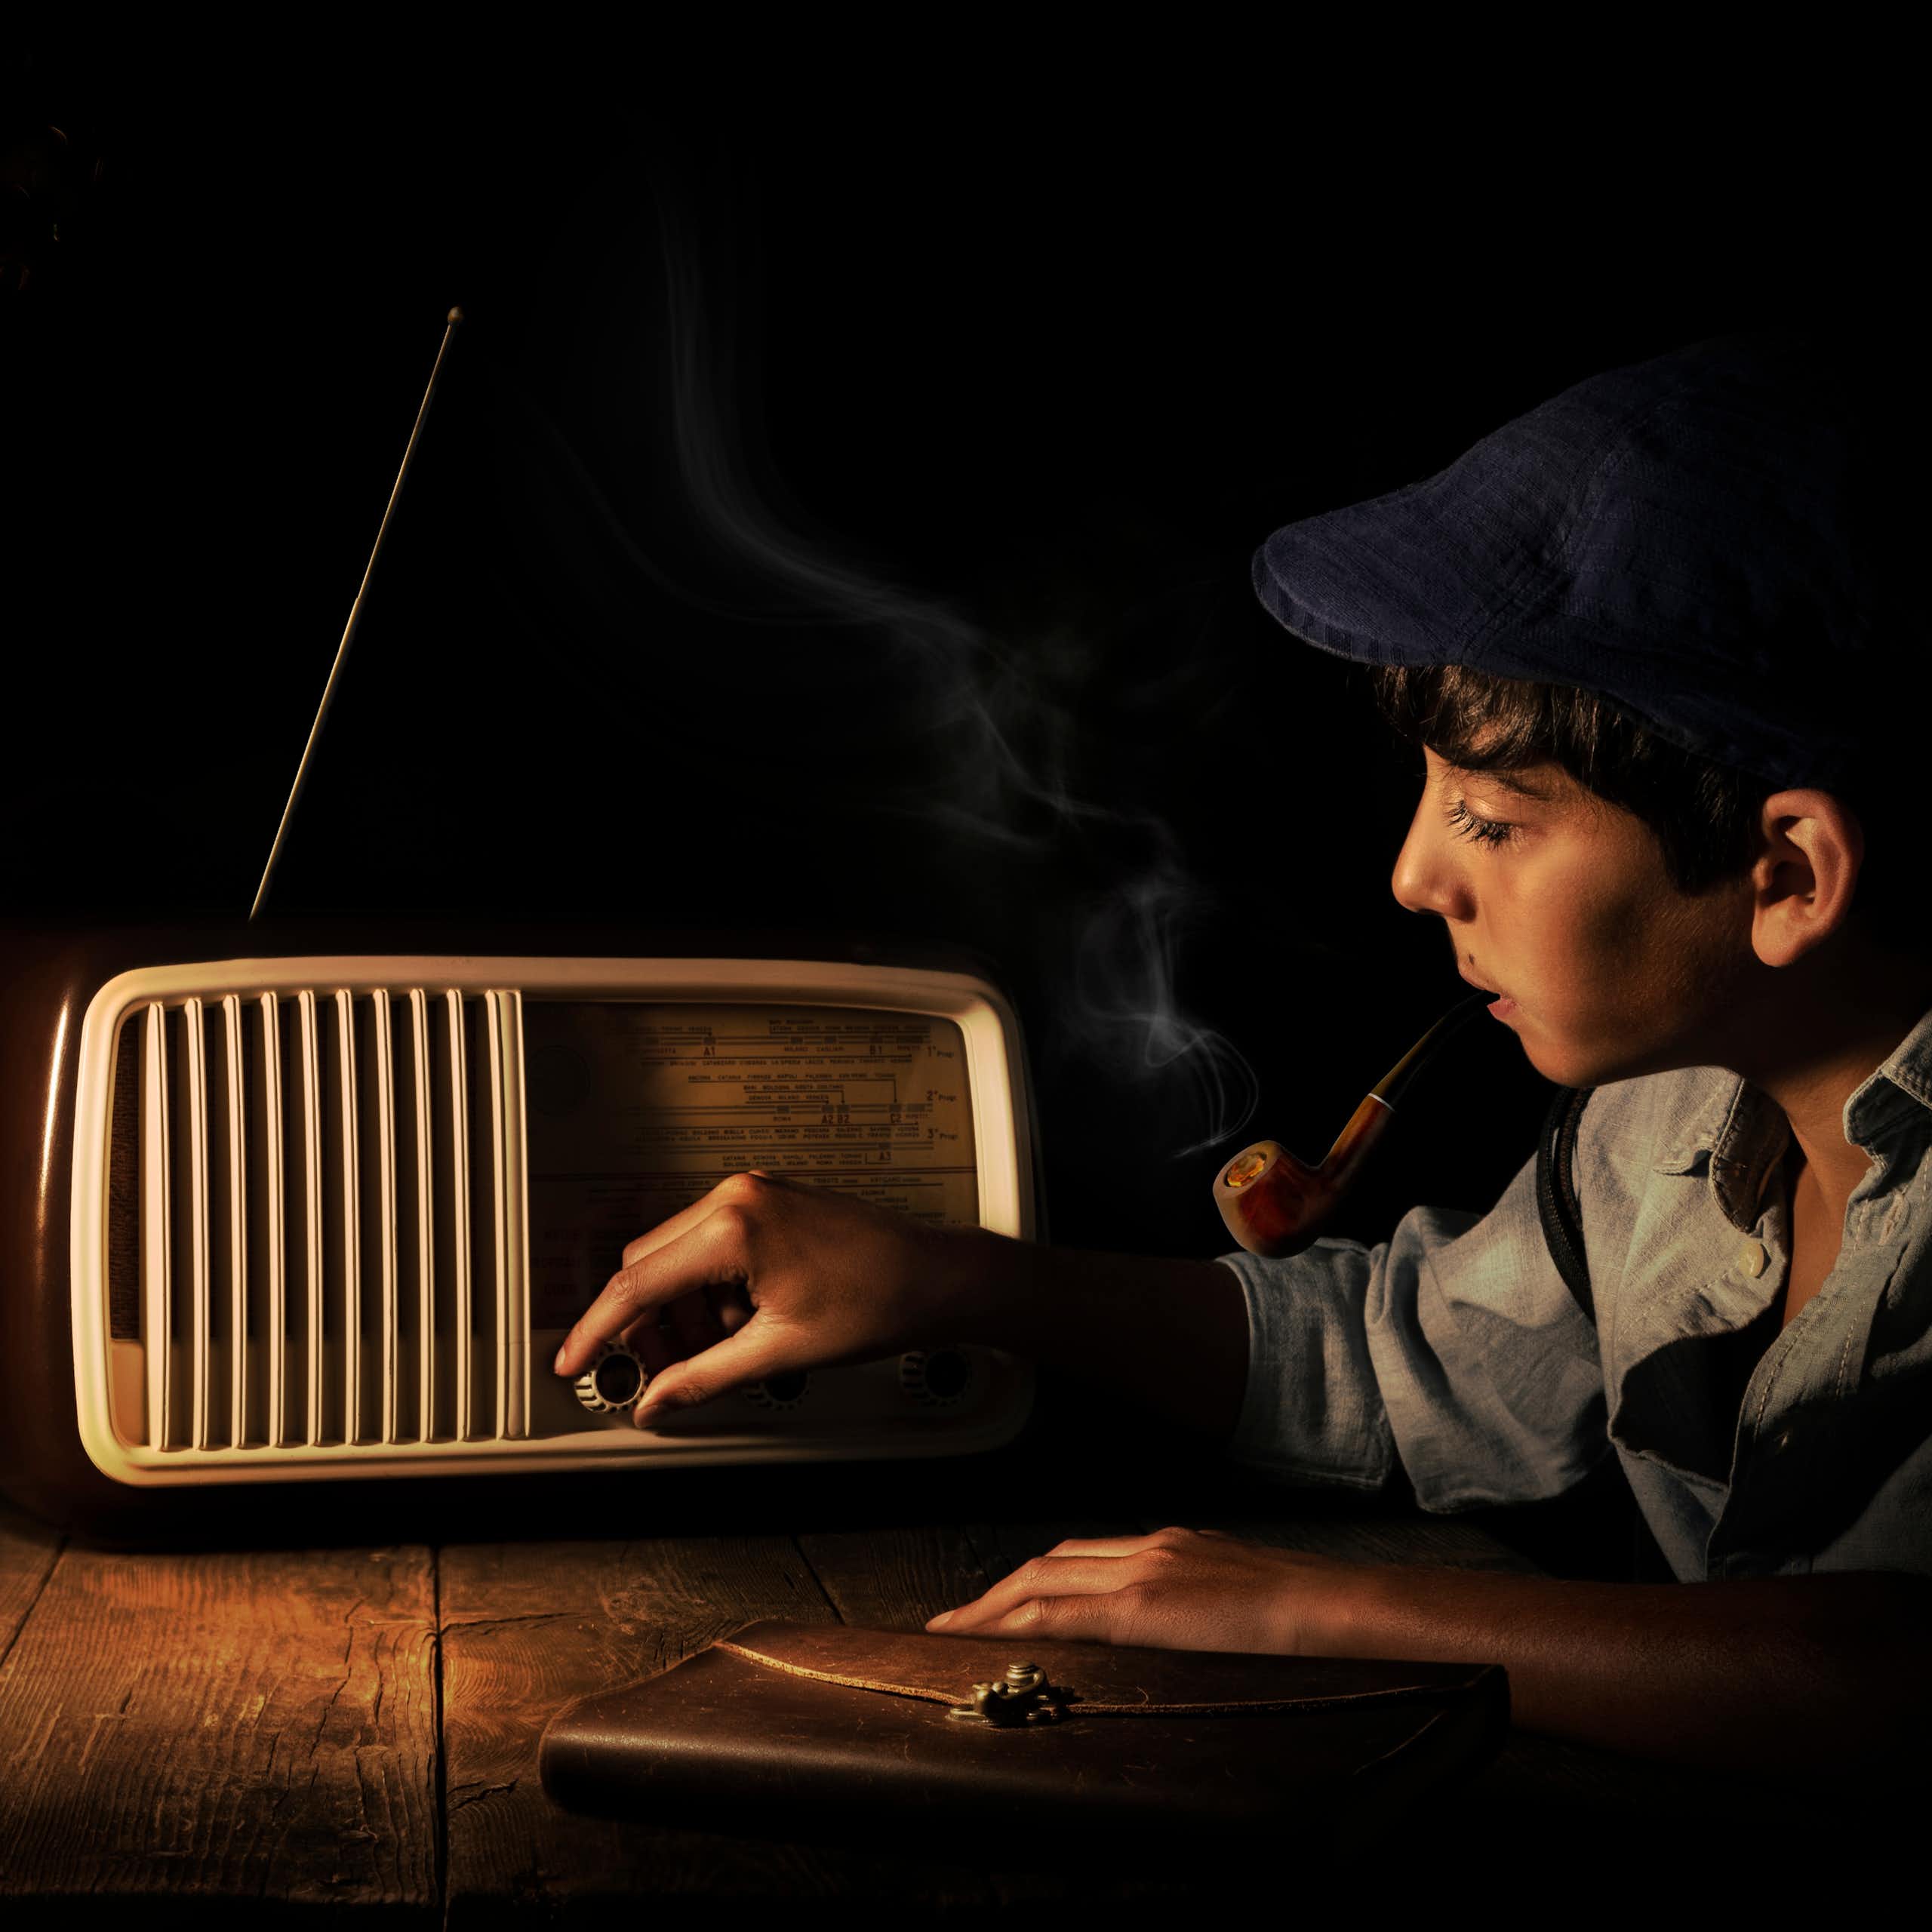 Boy adjusting old-fashioned radio